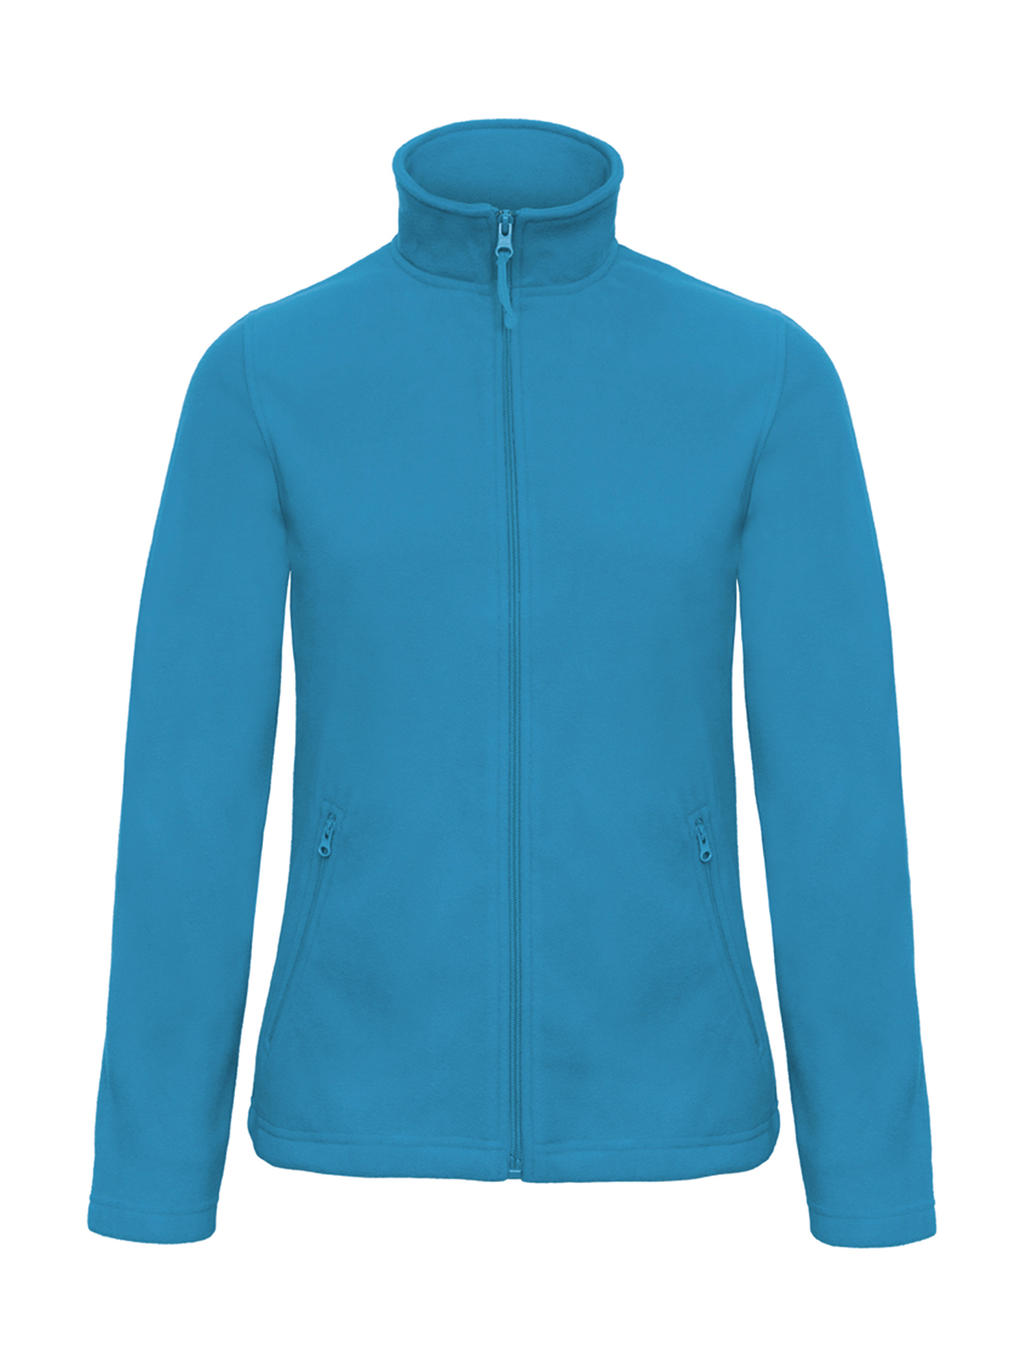 Mikina dámská B&C Micro Fleece - světle modrá, XXL